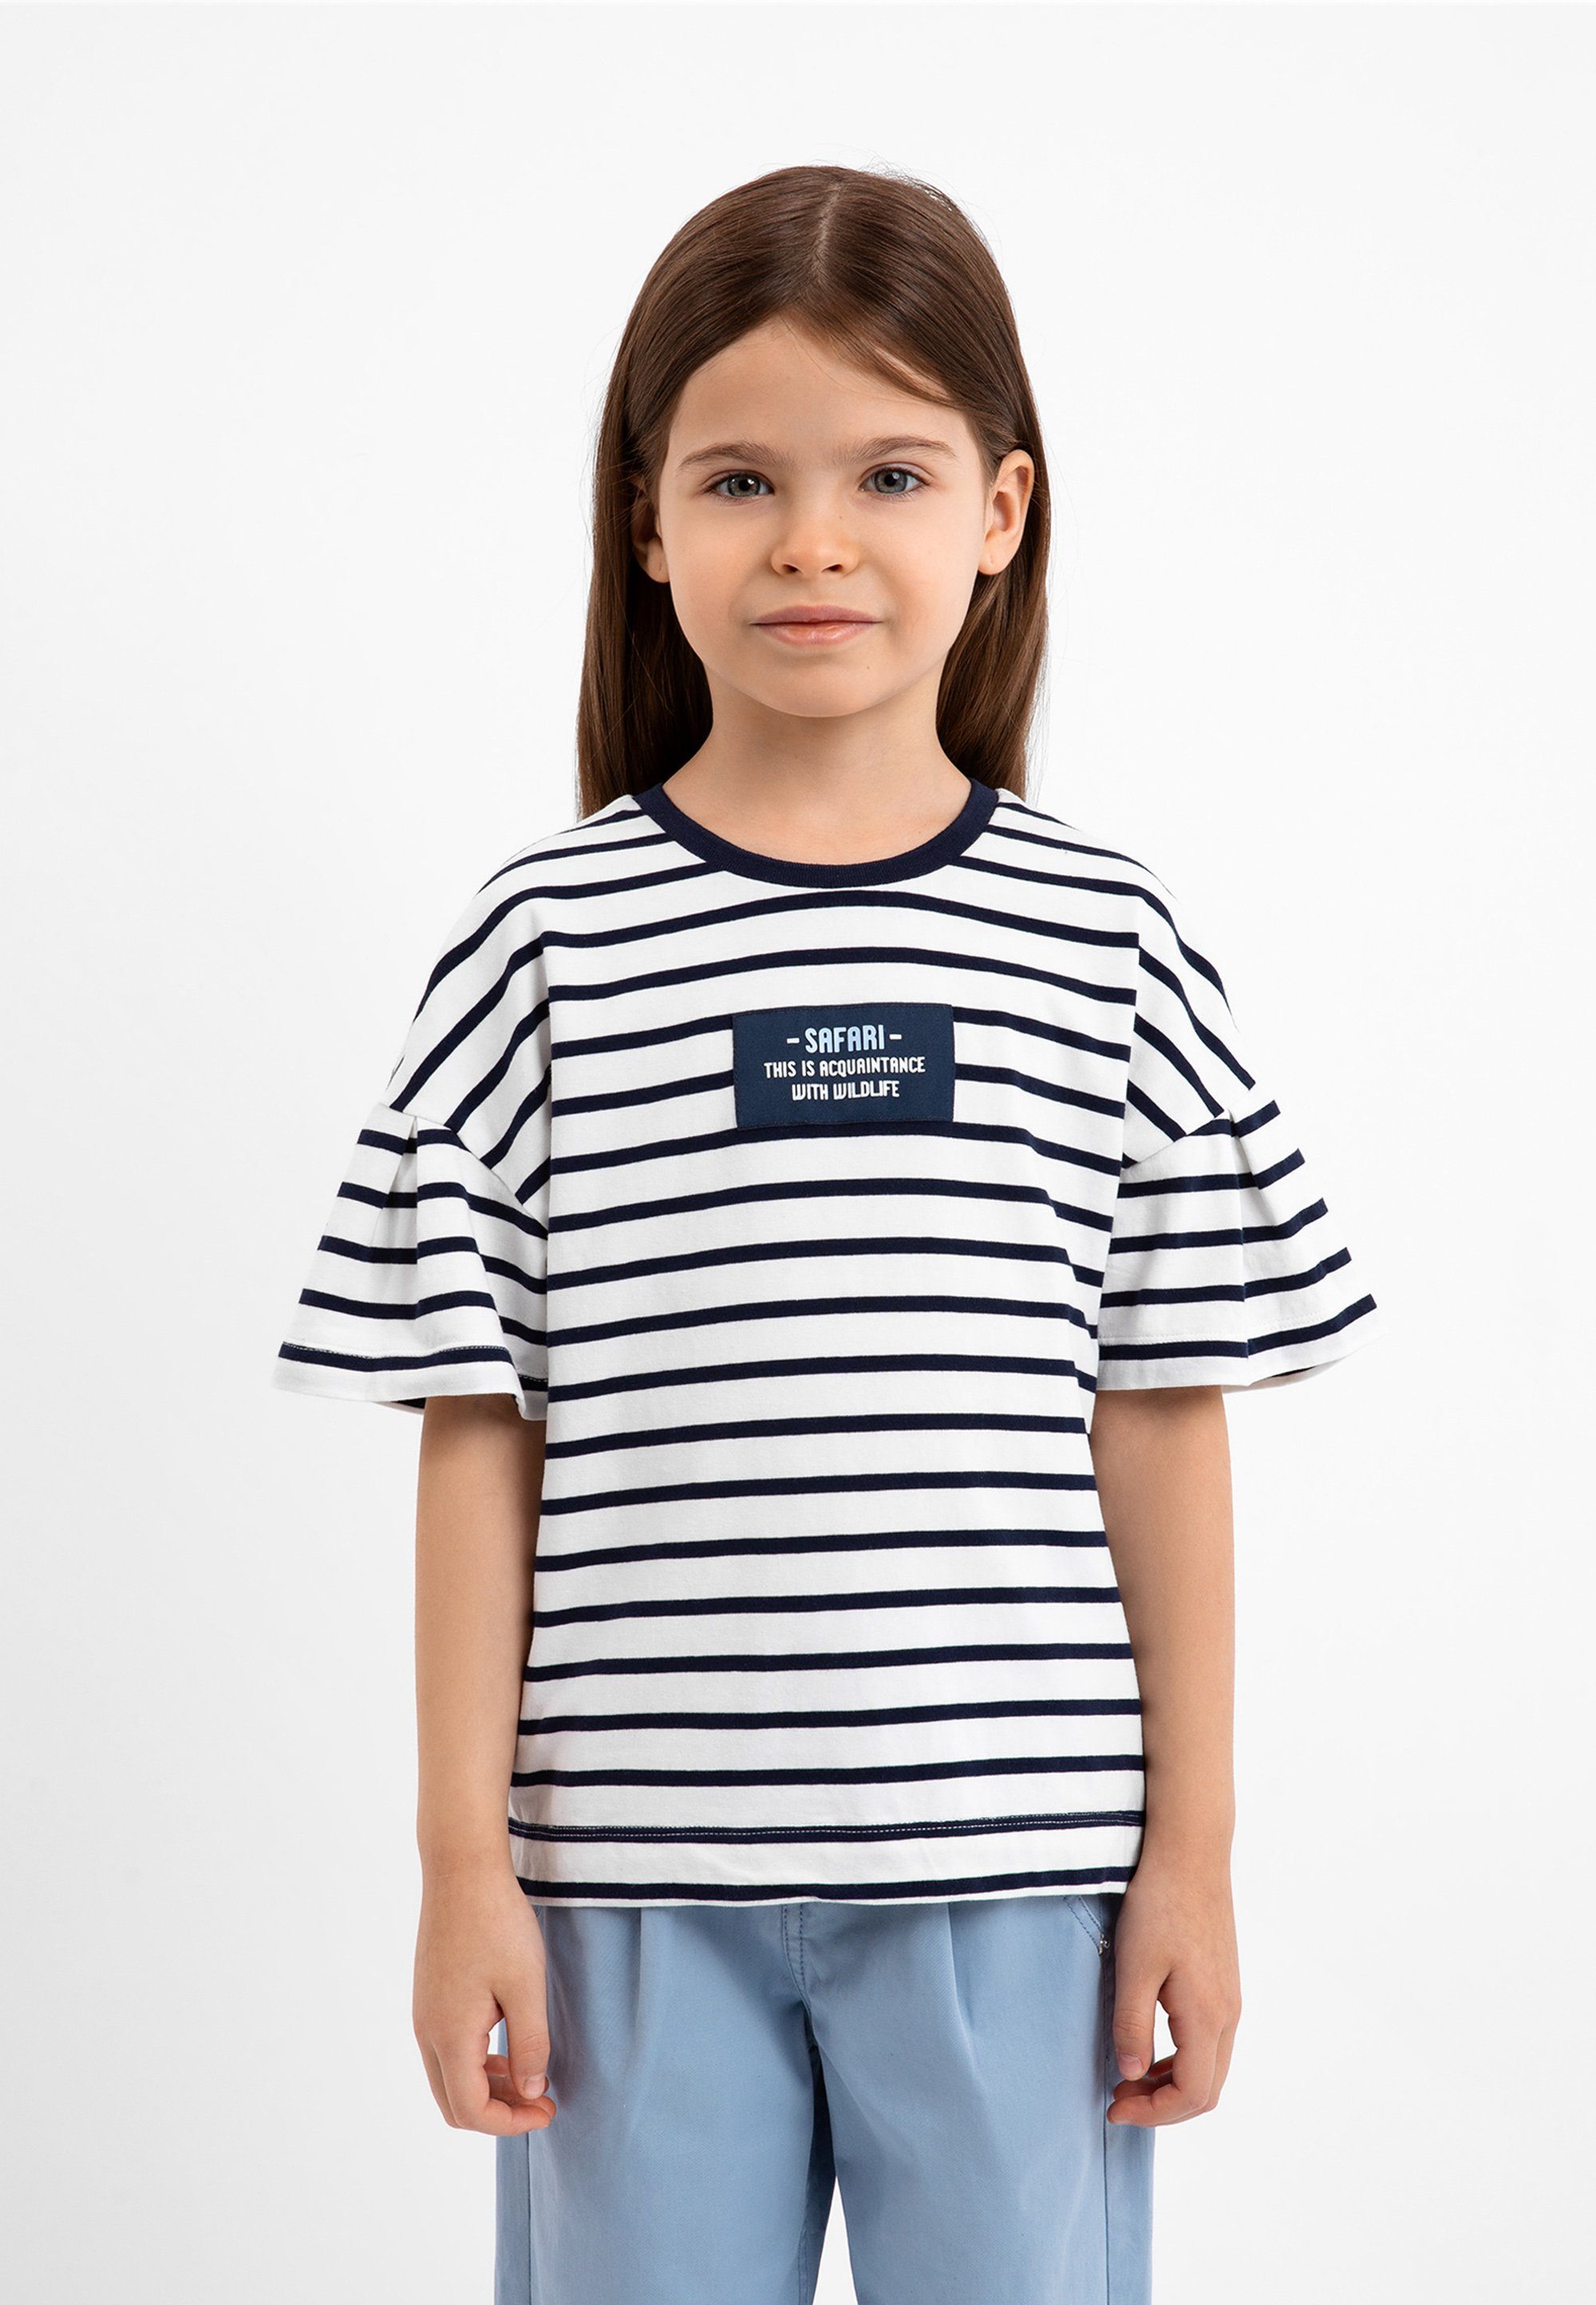 im Streifen-Design Gulliver tollen T-Shirt